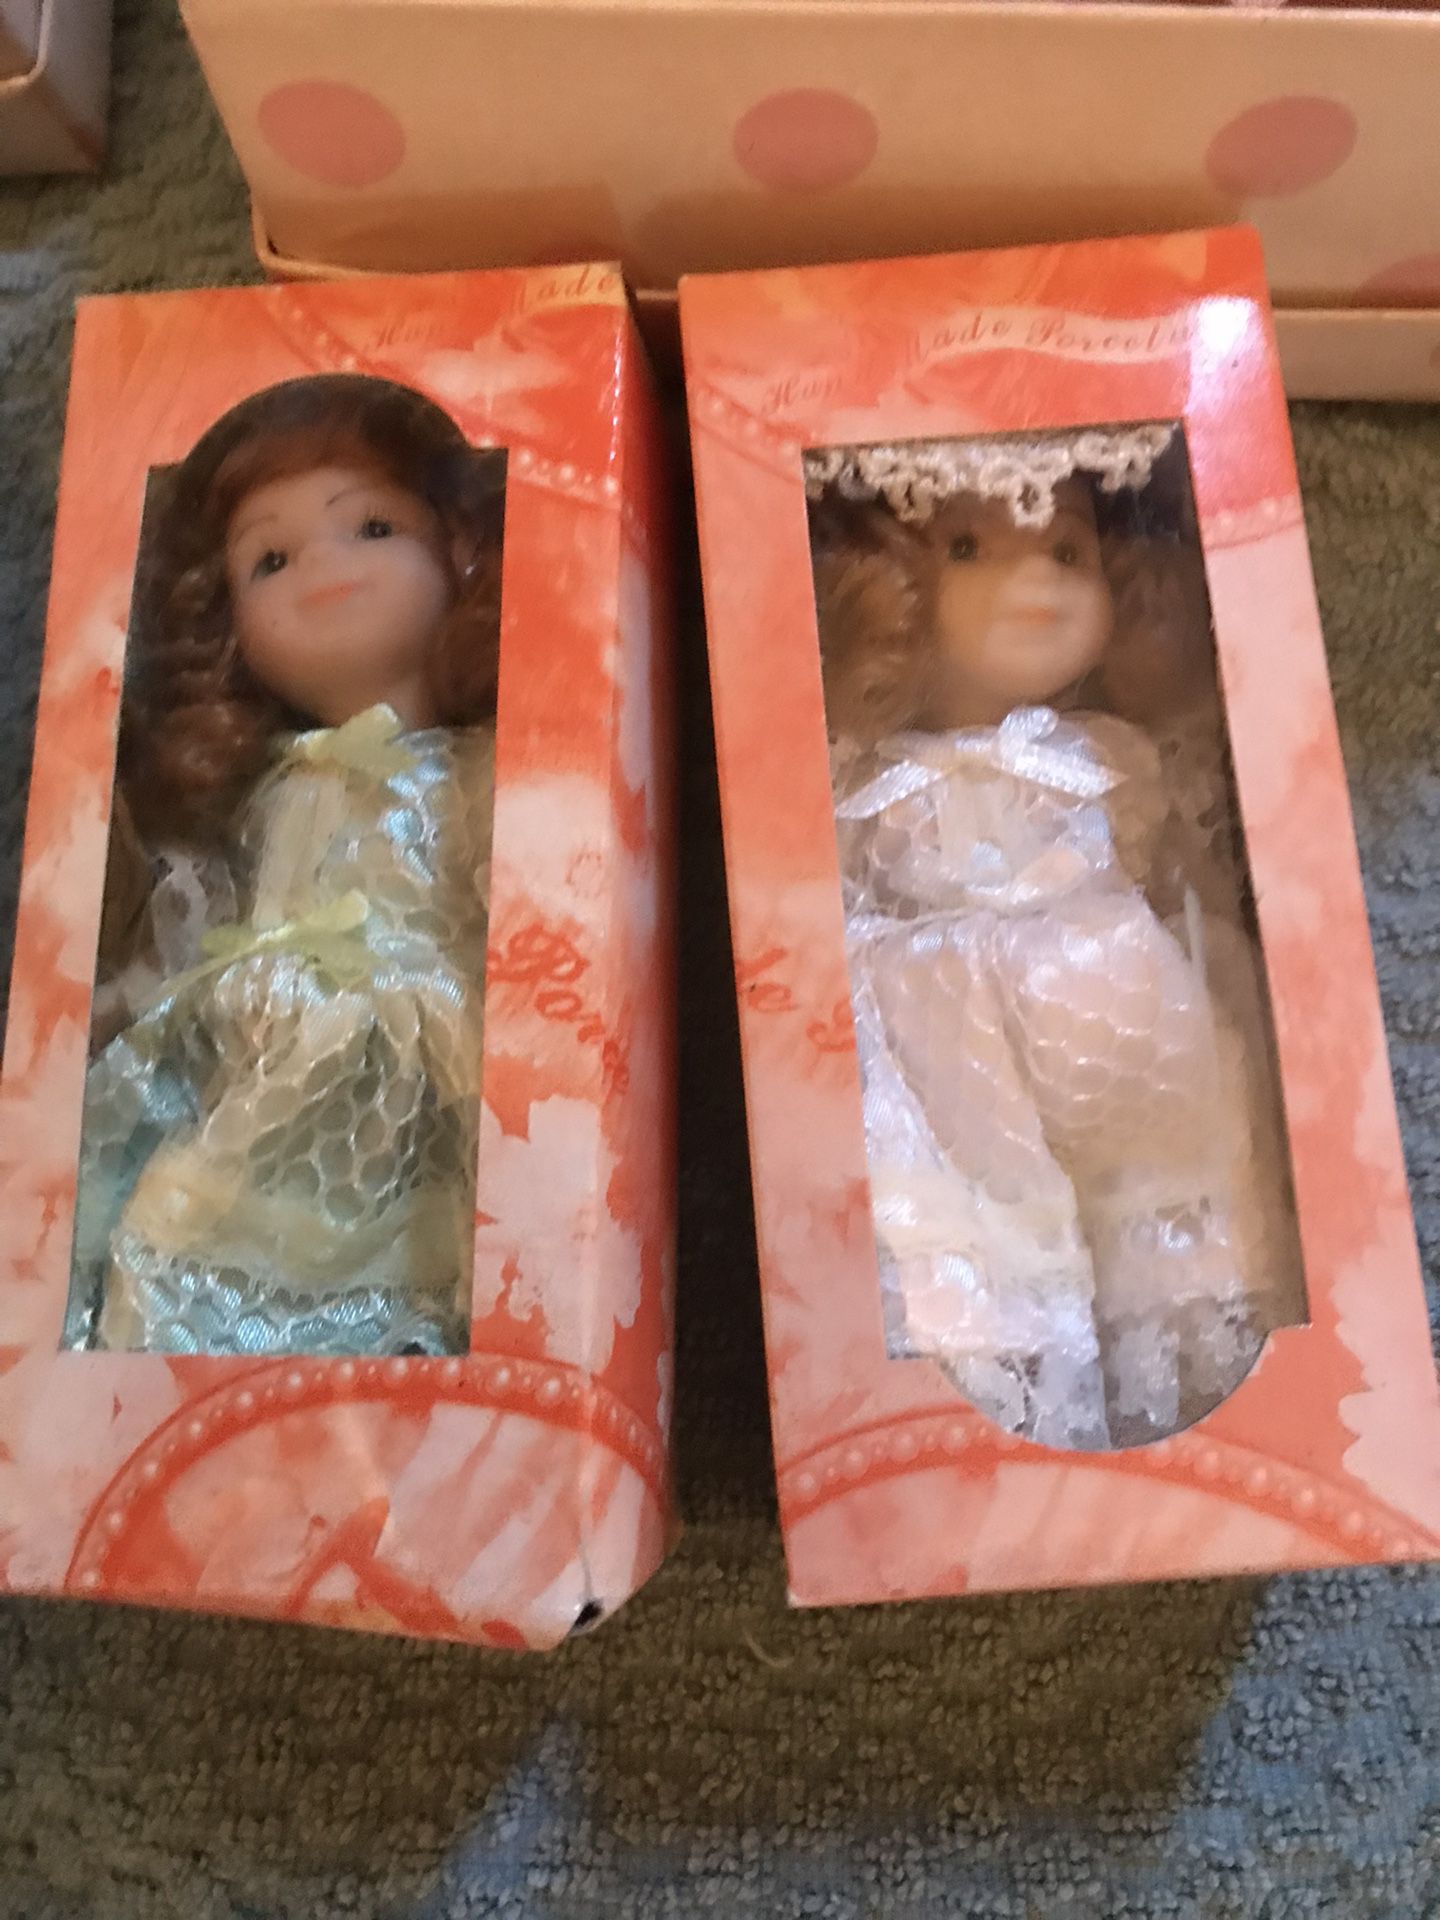 Porcelain dolls 